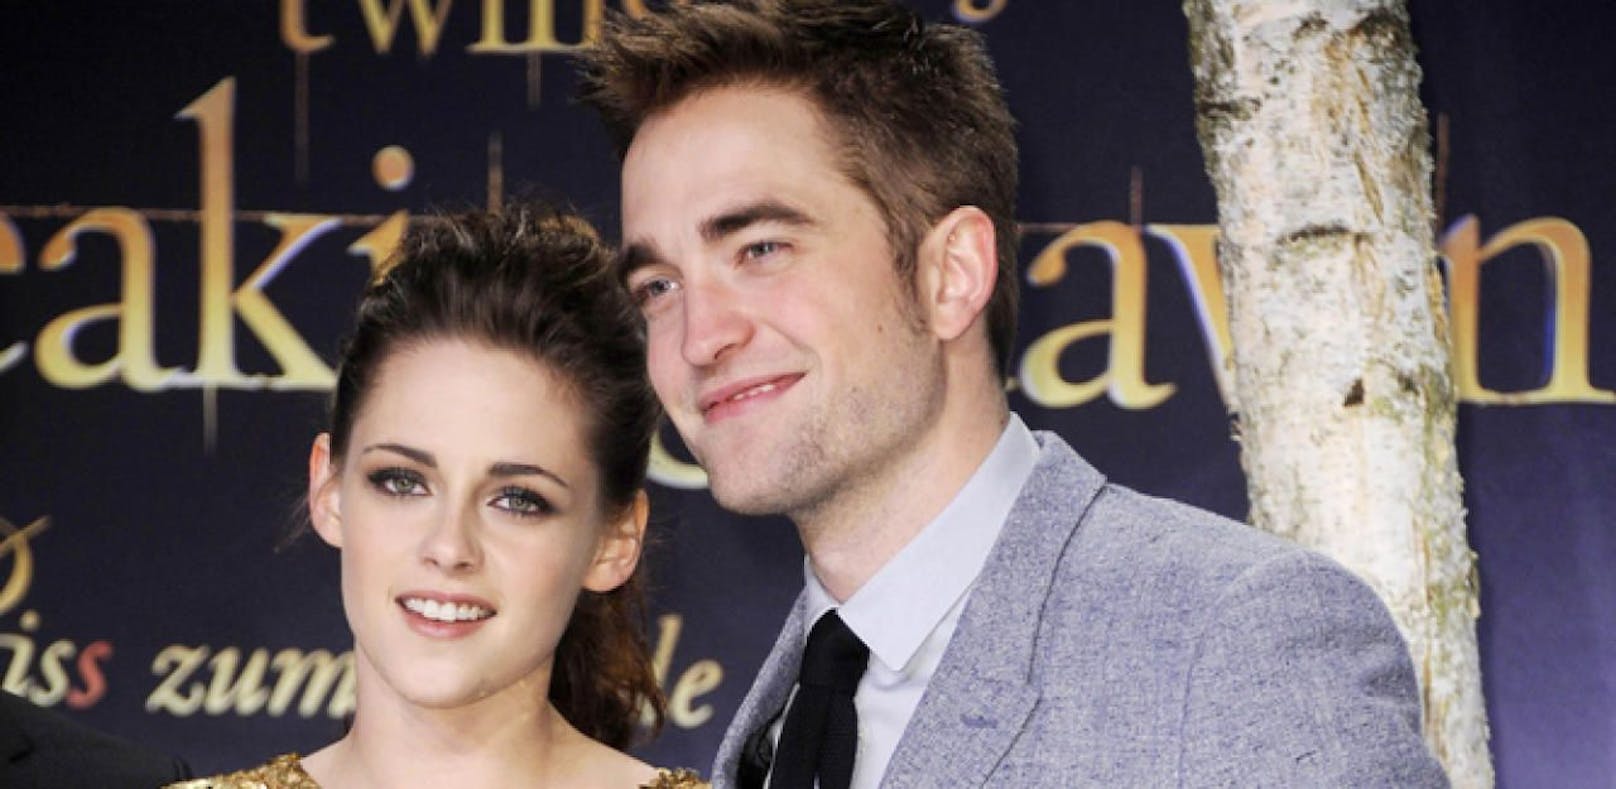 Kristen Stewart bei Date mit Pattinson erwischt